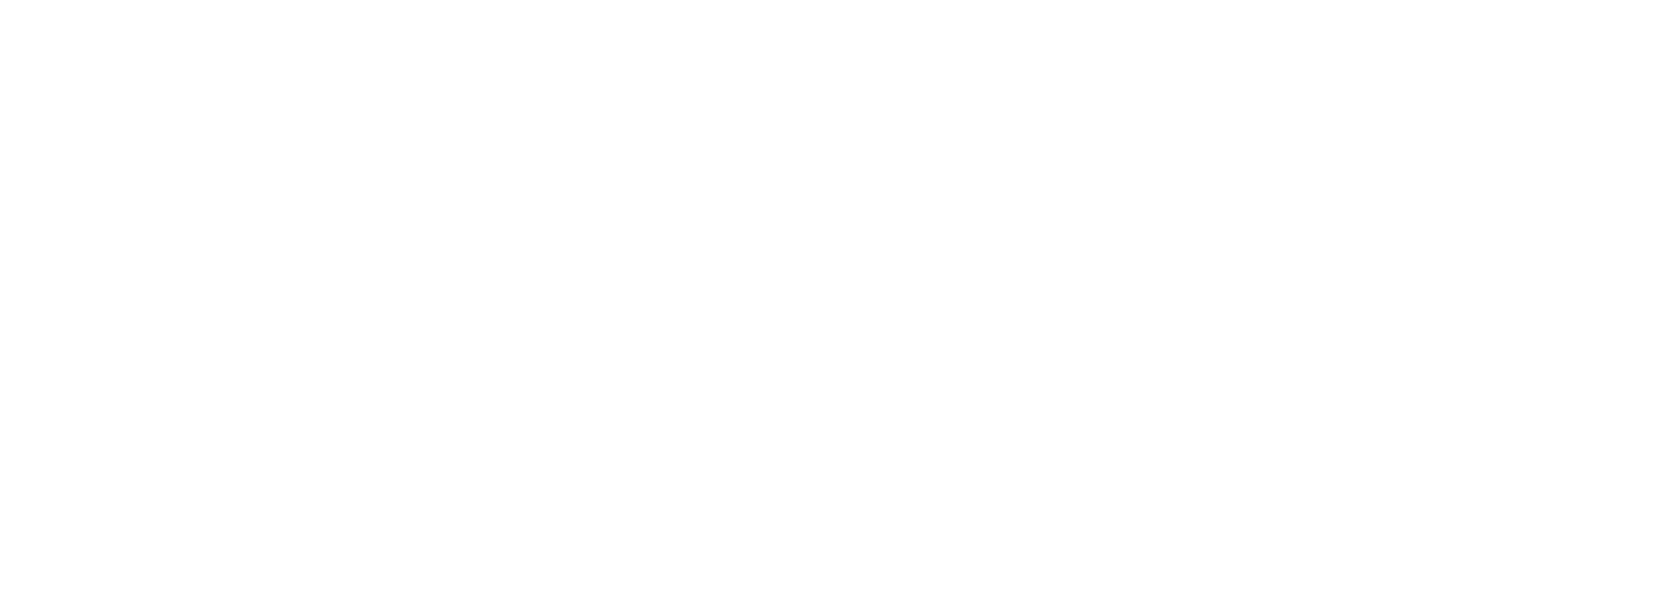 Логотипы гарантийных обязательств для продукции Cornilleau Hyphen